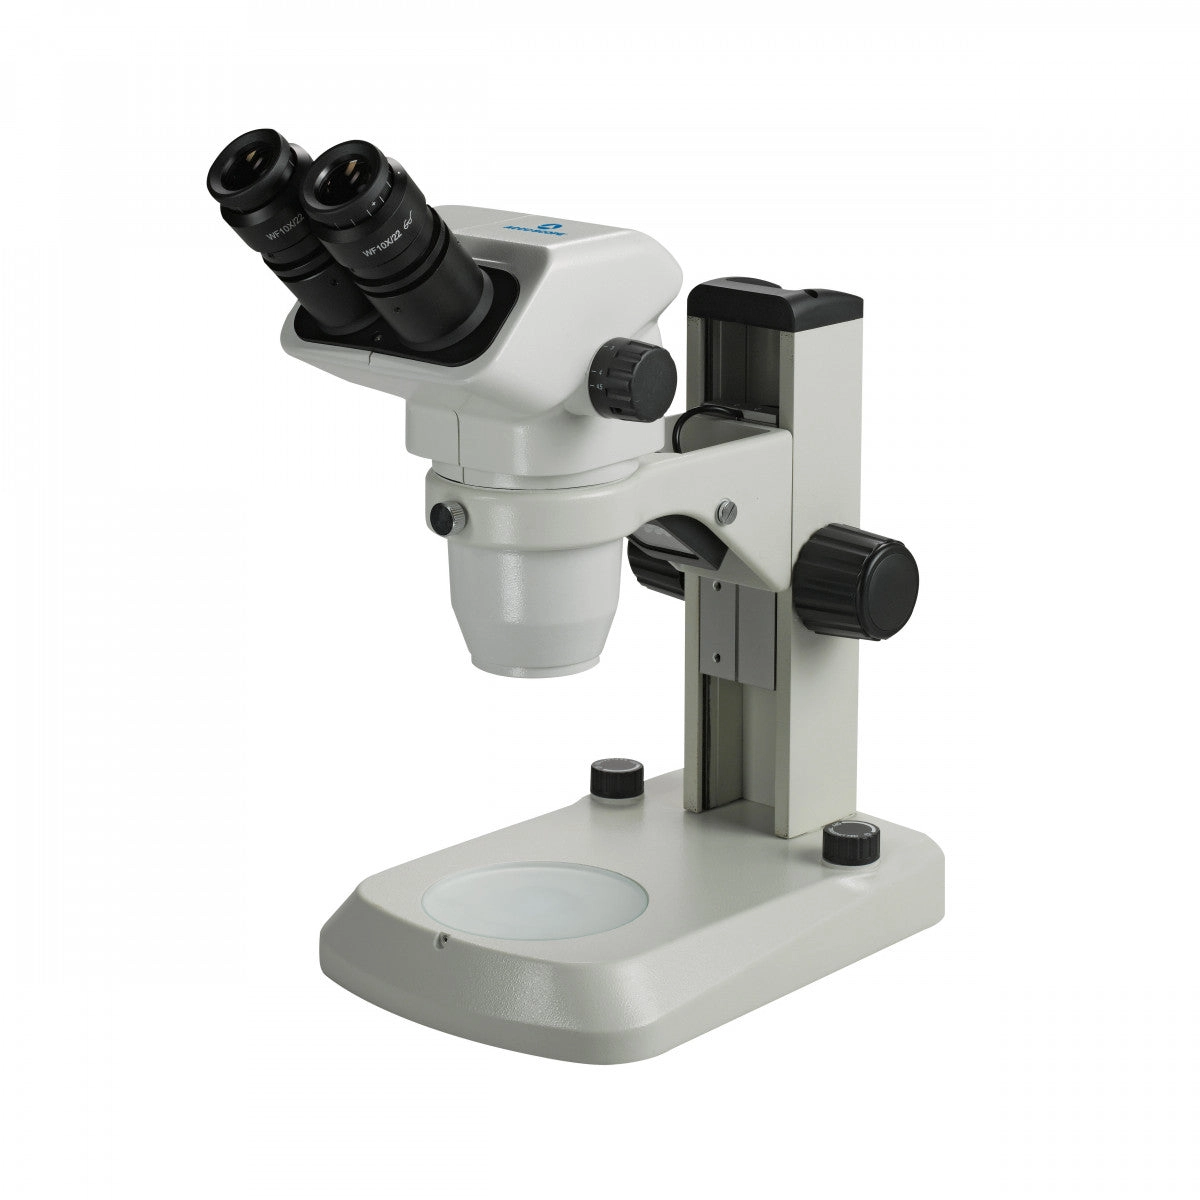 Accu-Scope 3075 Binocular Zoom Stereo Microscope on E-LED Stand